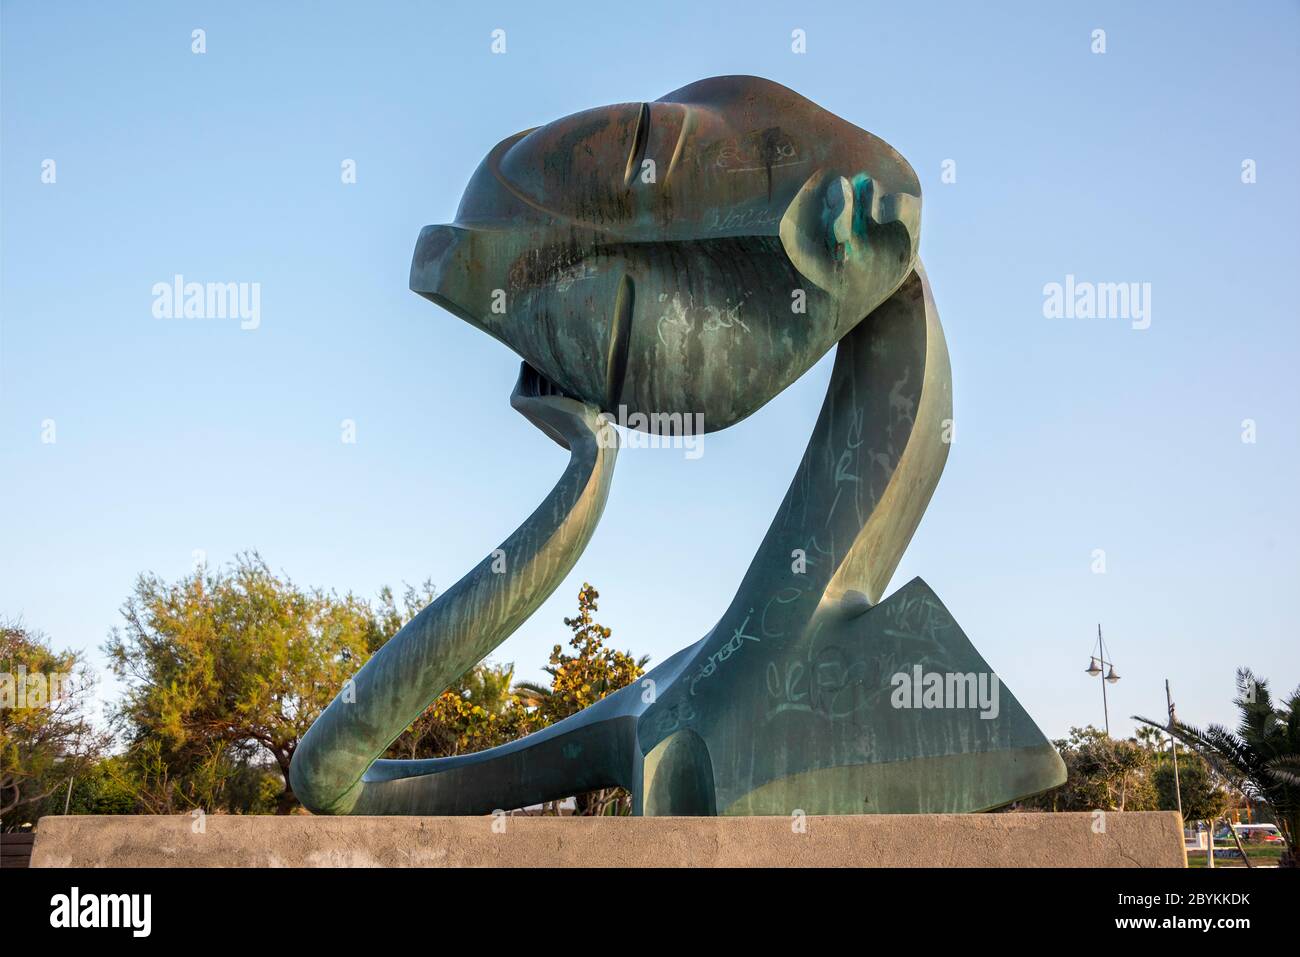 La sculpture du rêve du Millénaire (EL SUENO DEL MILENIO) au parc Tematico, Arrecife, Lanzarote Banque D'Images